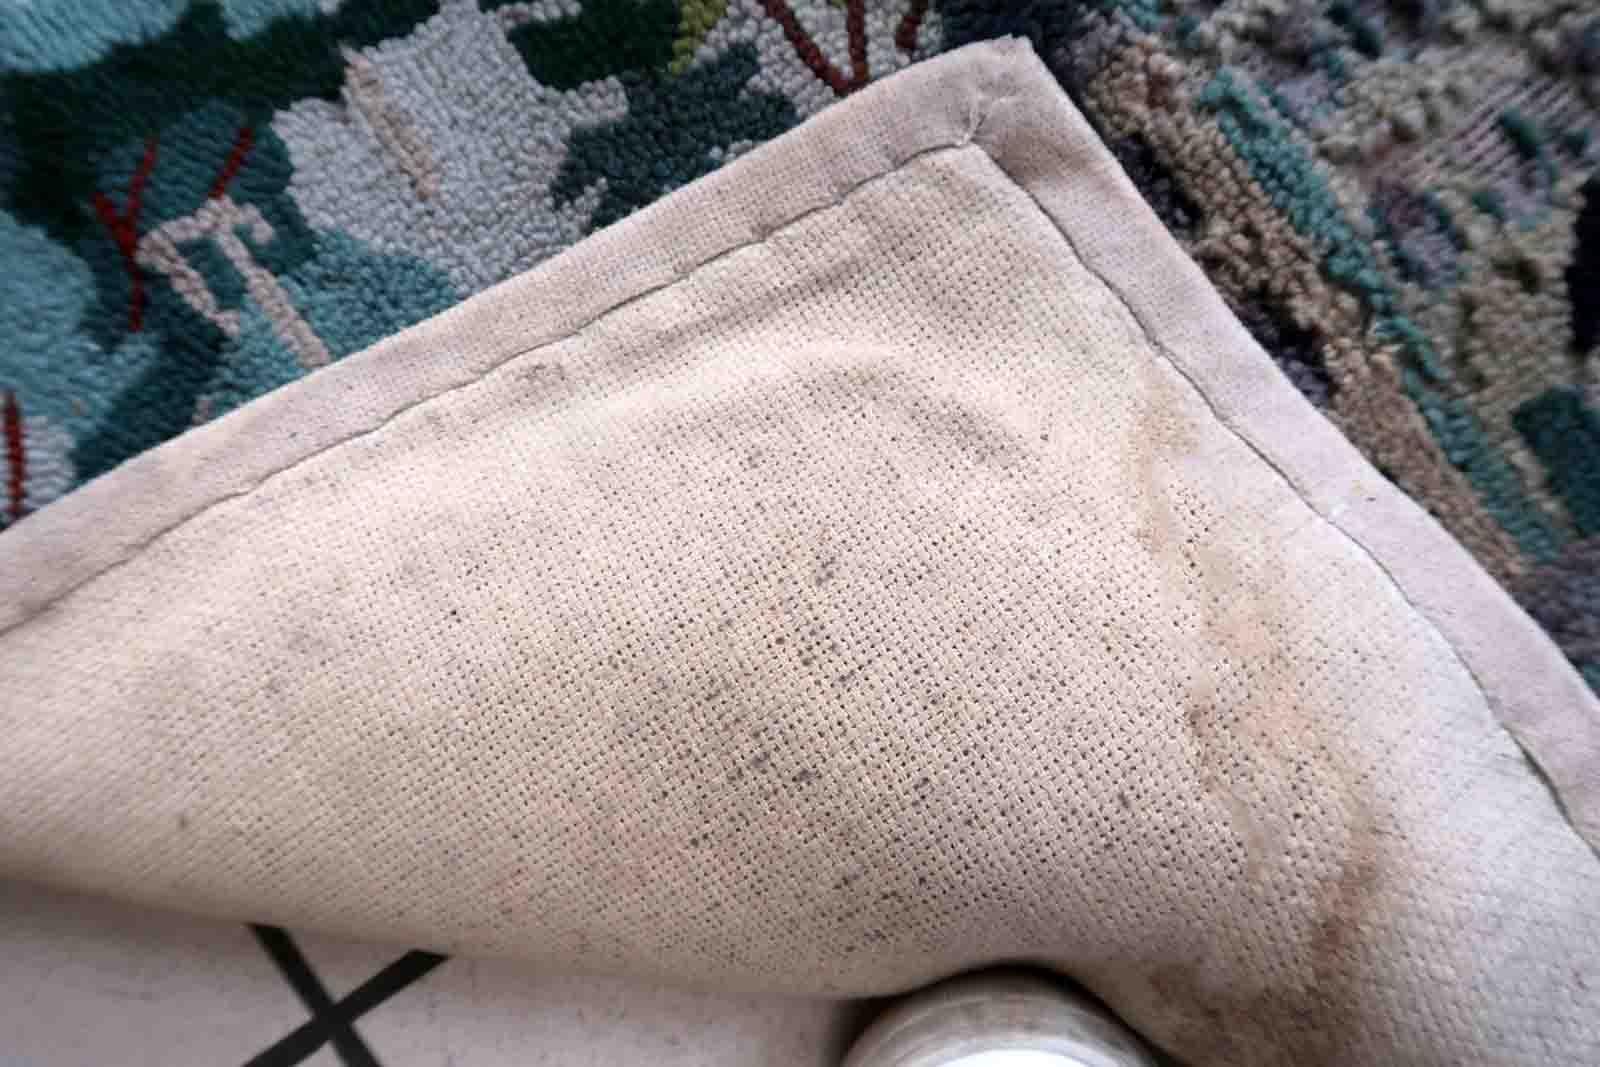 Tapis crocheté américain vintage fait à la main avec un motif pictural. Le tapis date du milieu du 20e siècle. Il y a des restaurations anciennes.

-condition : restauré,

-circa : 1940s,

-Taille : 1.8' x 2.8' (56cm x 86cm),

-Matériau :